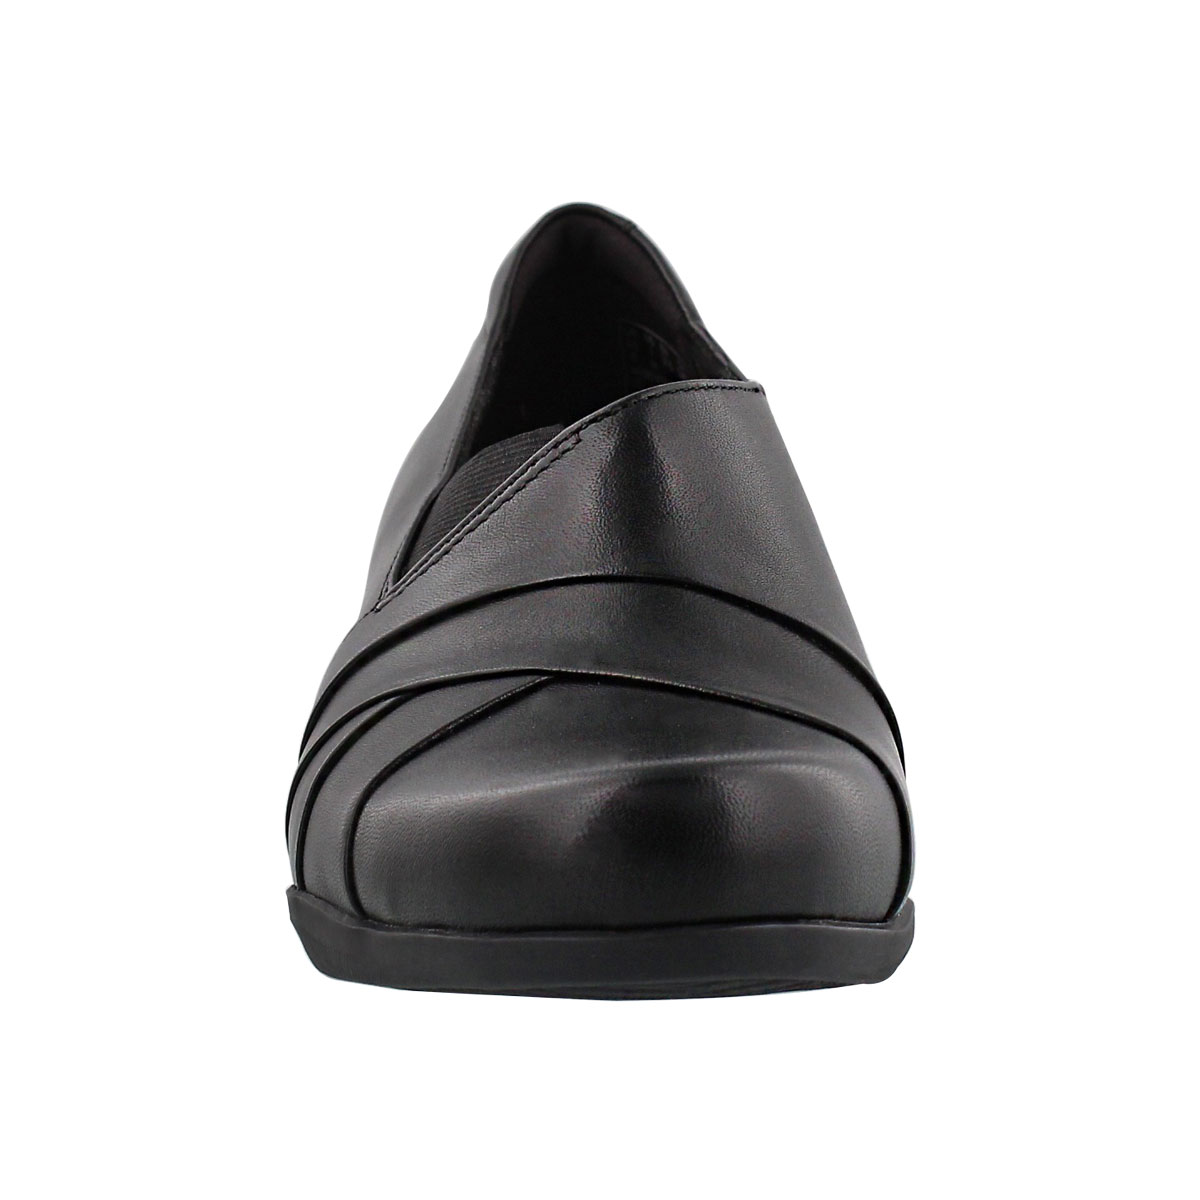 ROSALYN ADELE black dress heel 